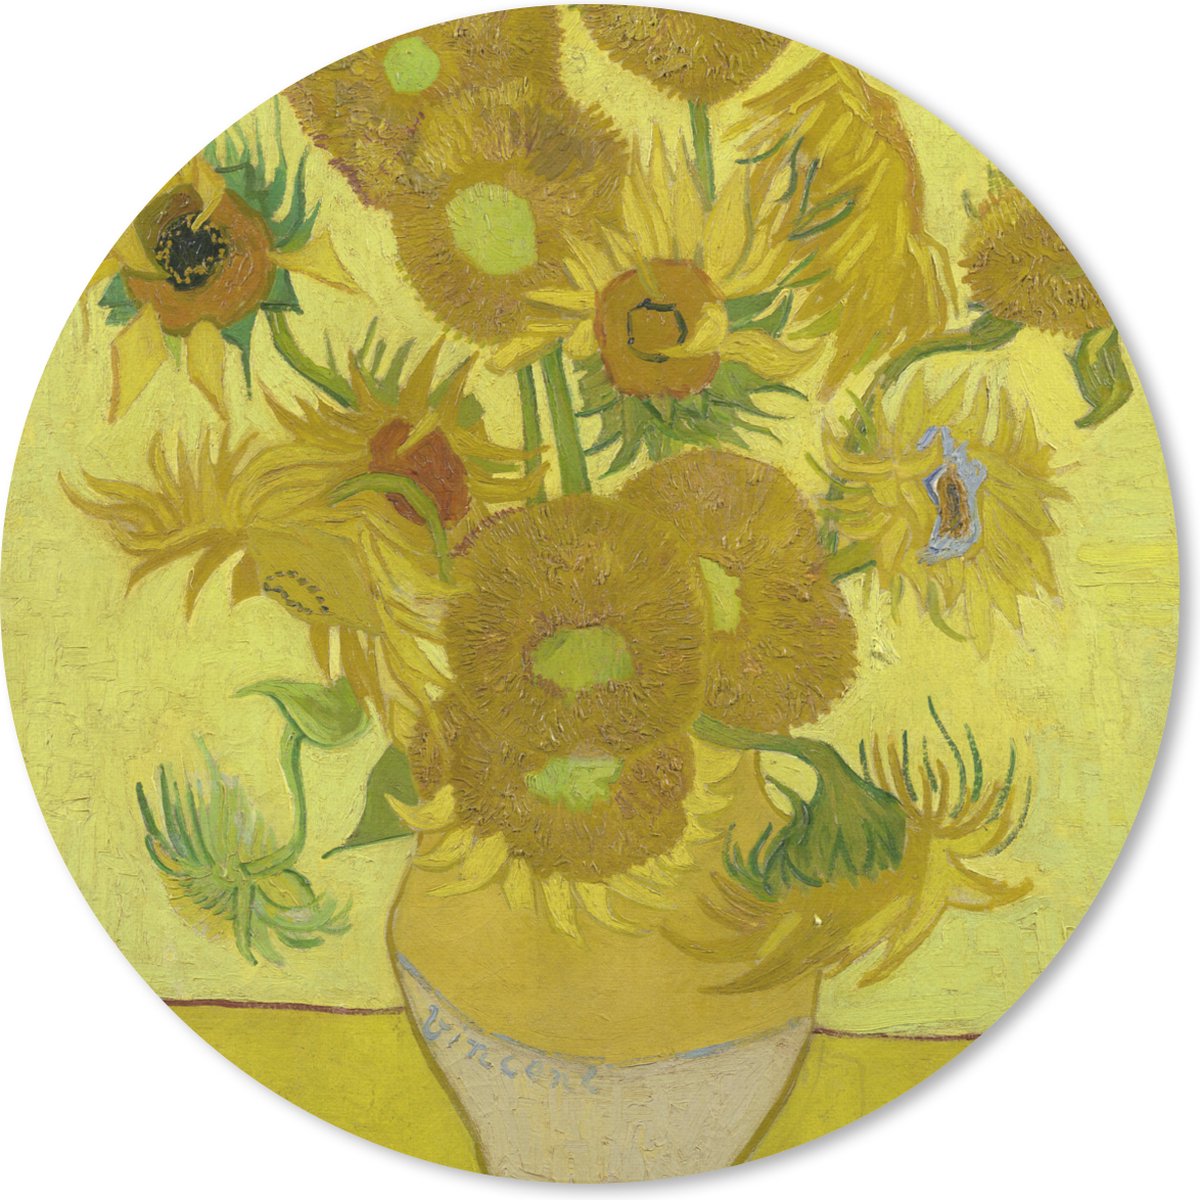 Muismat - Mousepad - Rond - Zonnebloemen - Vincent van Gogh - 30x30 cm - Ronde muismat